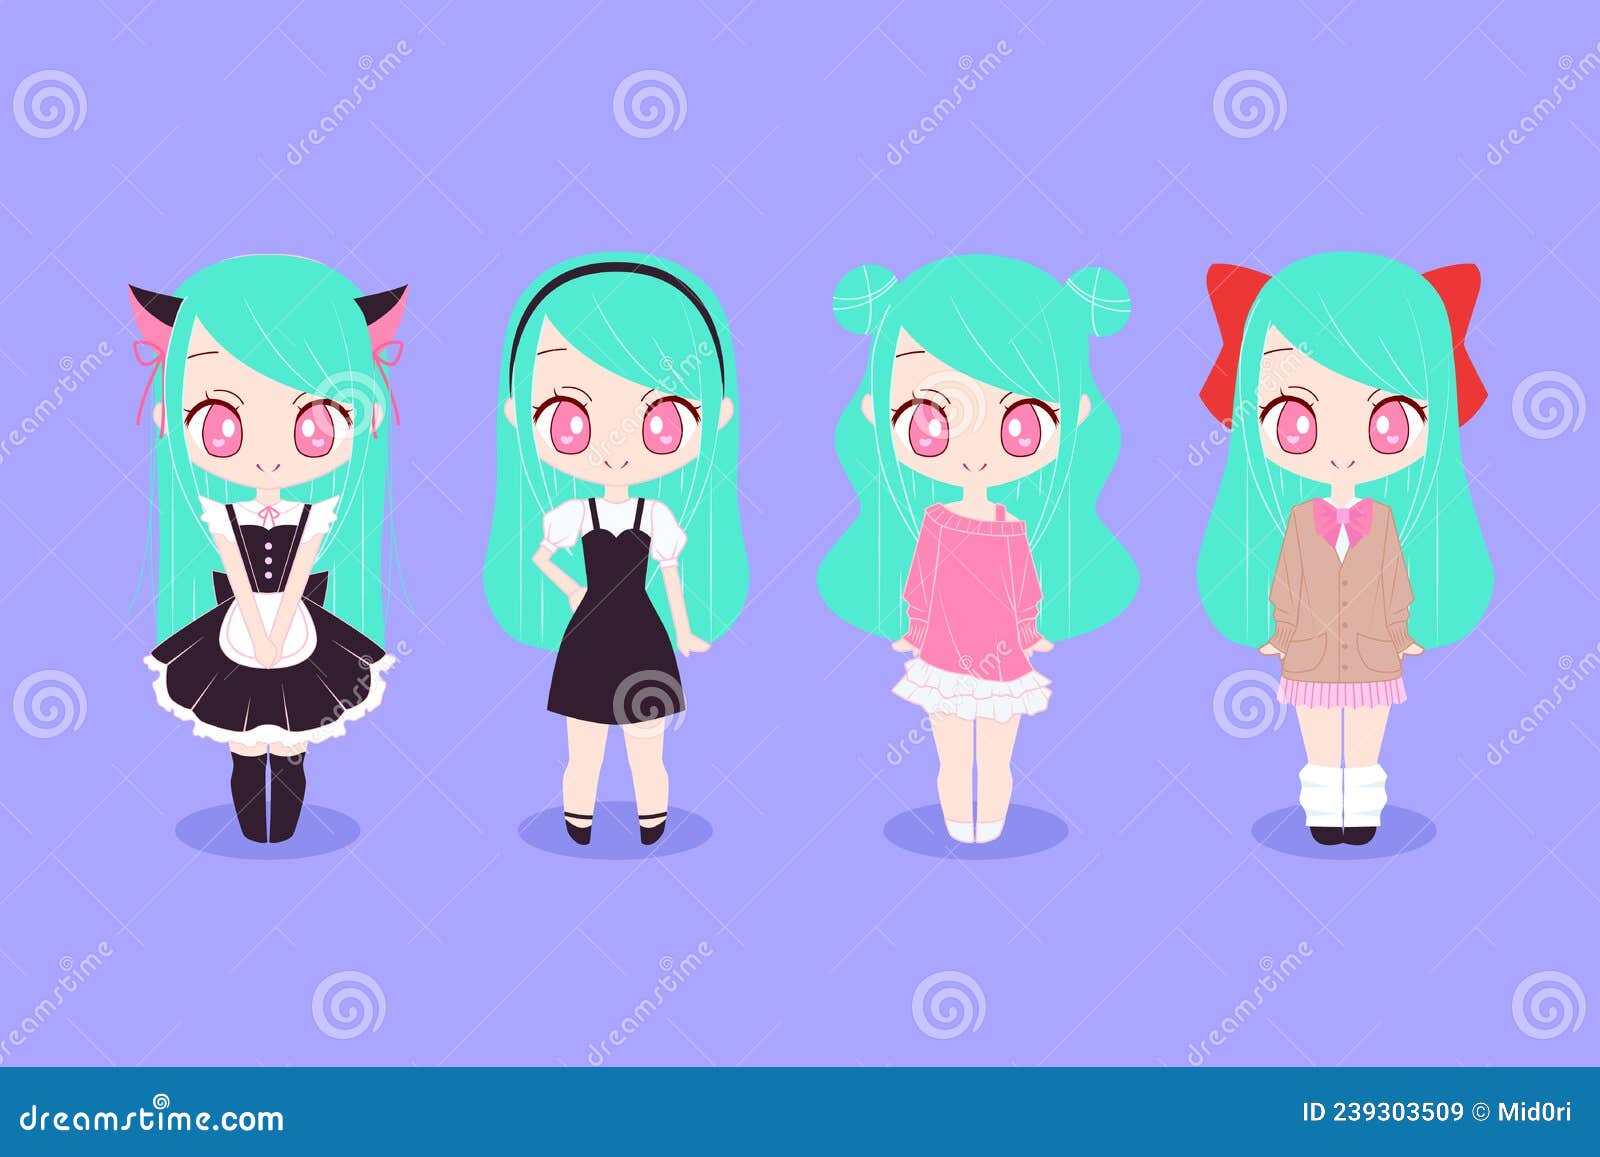 Baixar Vetor De Conjunto De Personagens Fofos De Anime Chibi Girls